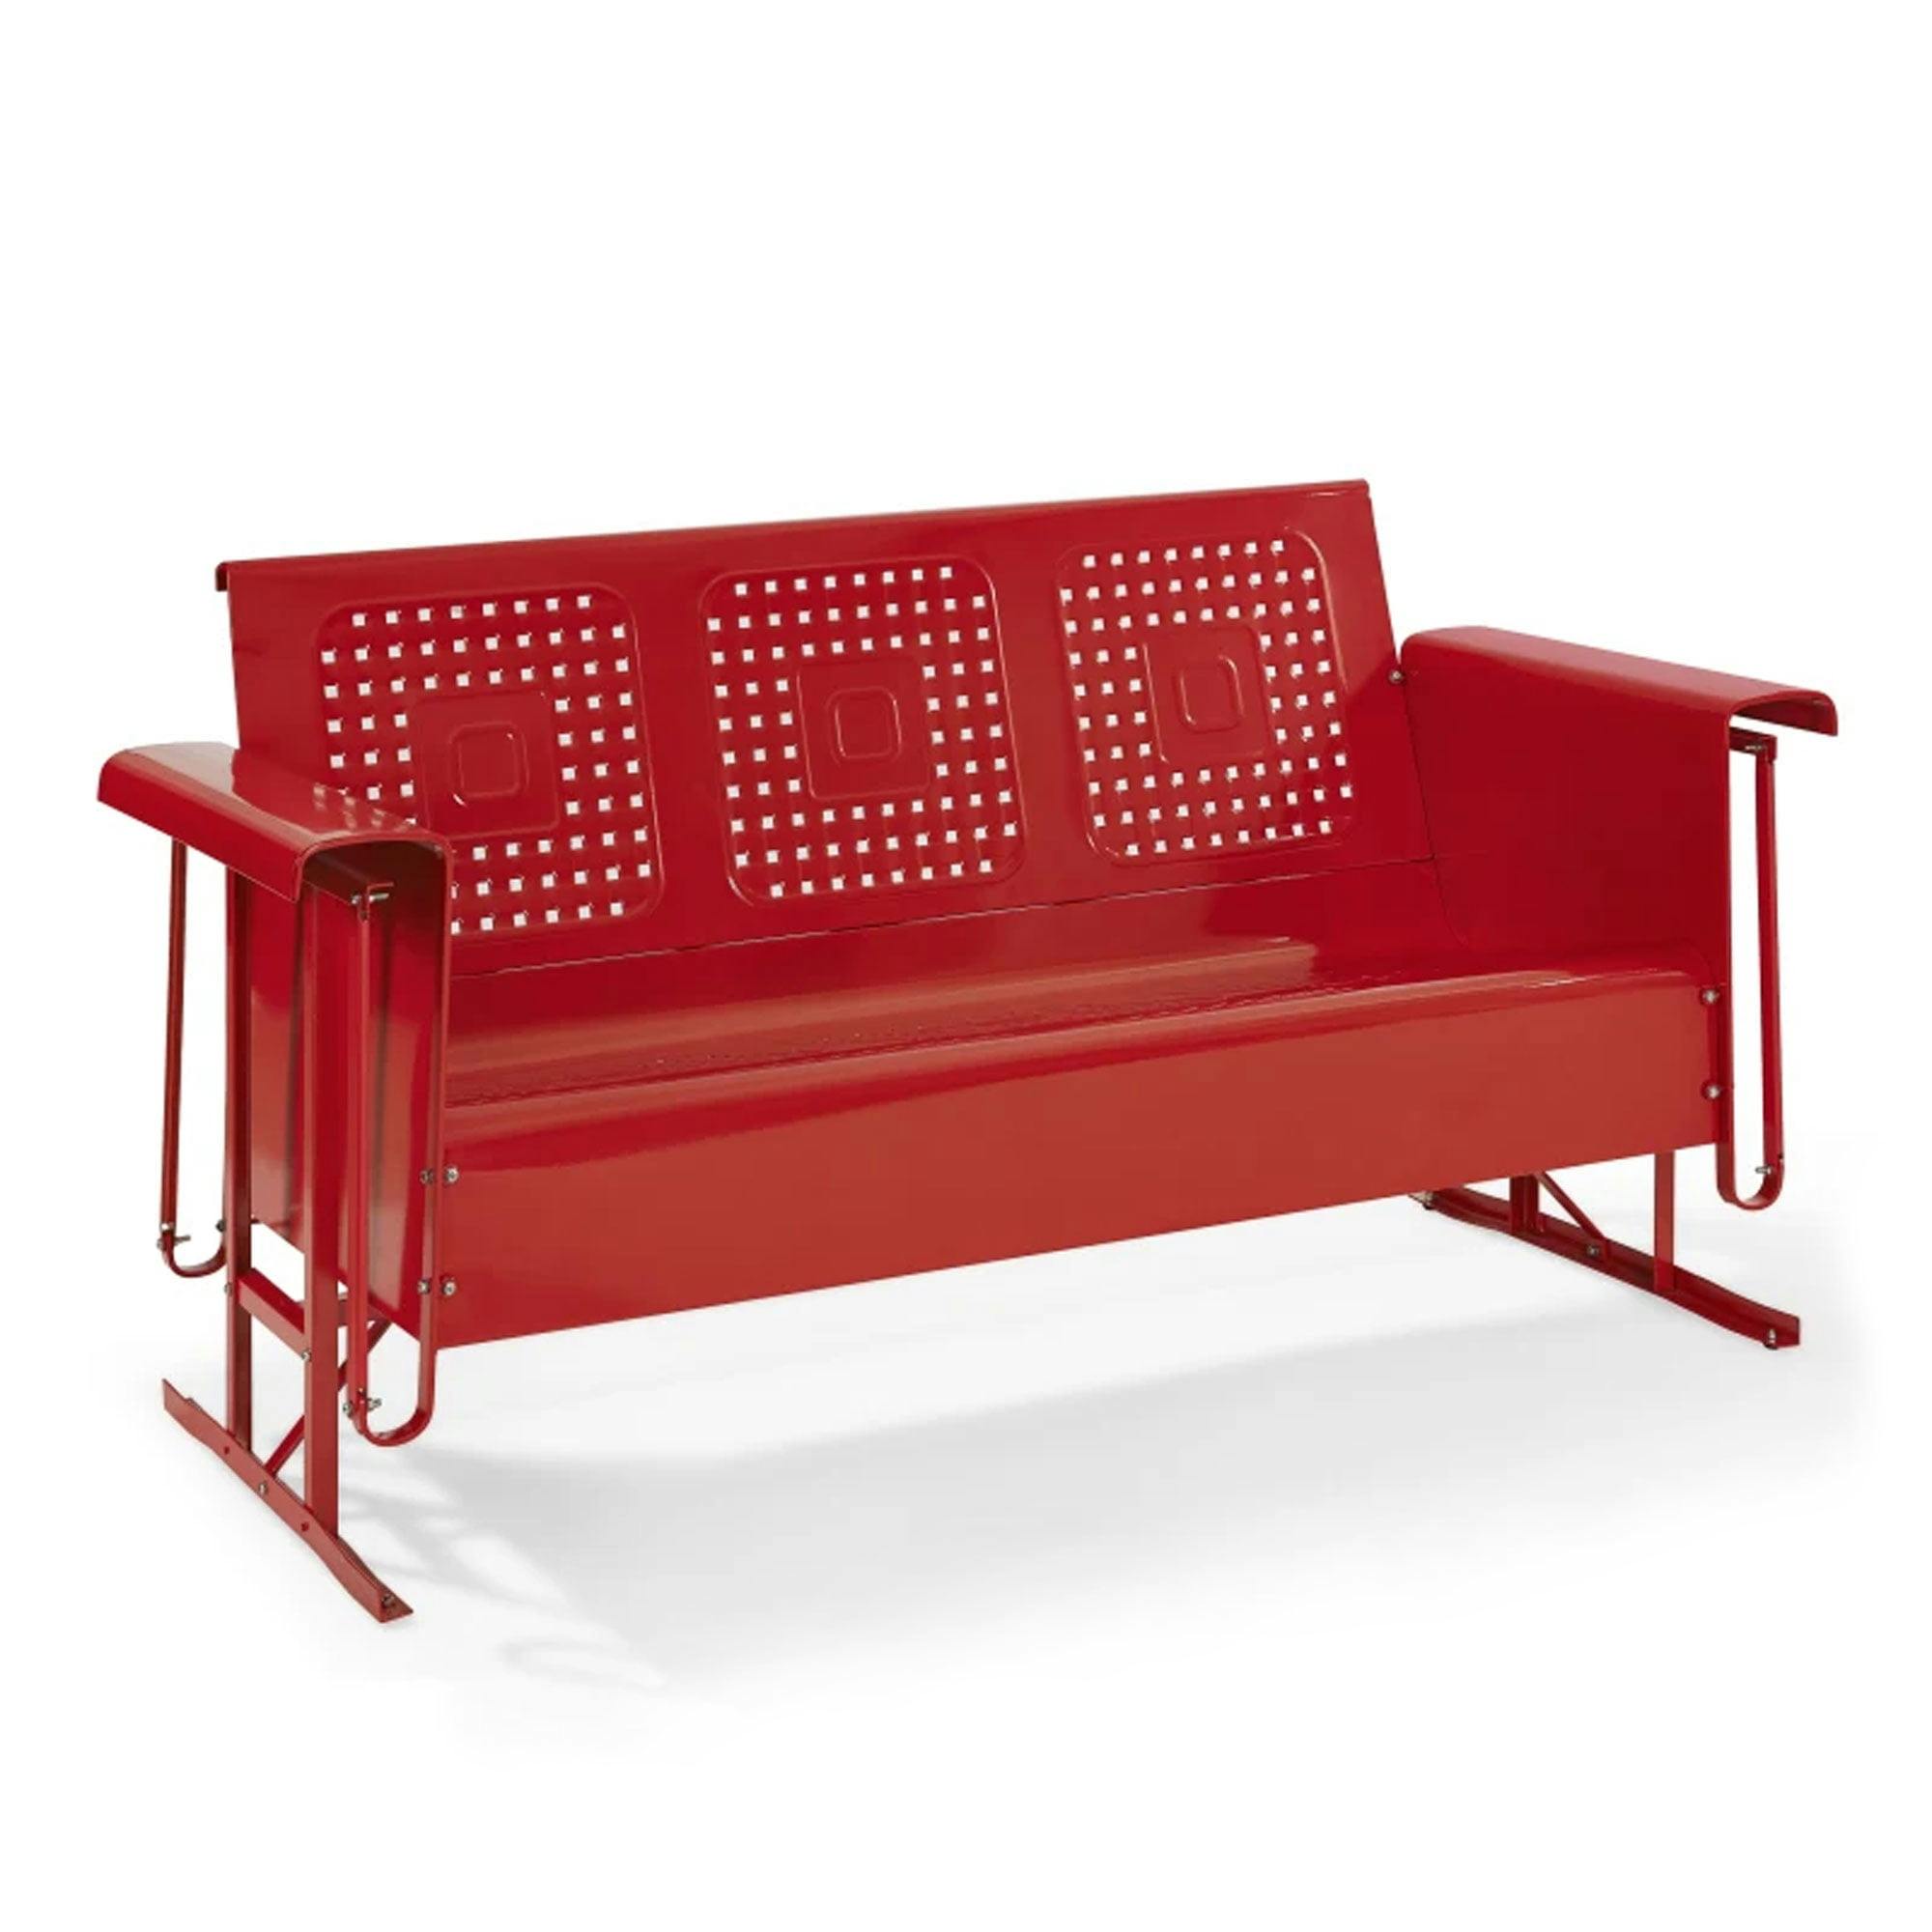 Retro Bright Red Metal Outdoor Sofa Glider, 60"